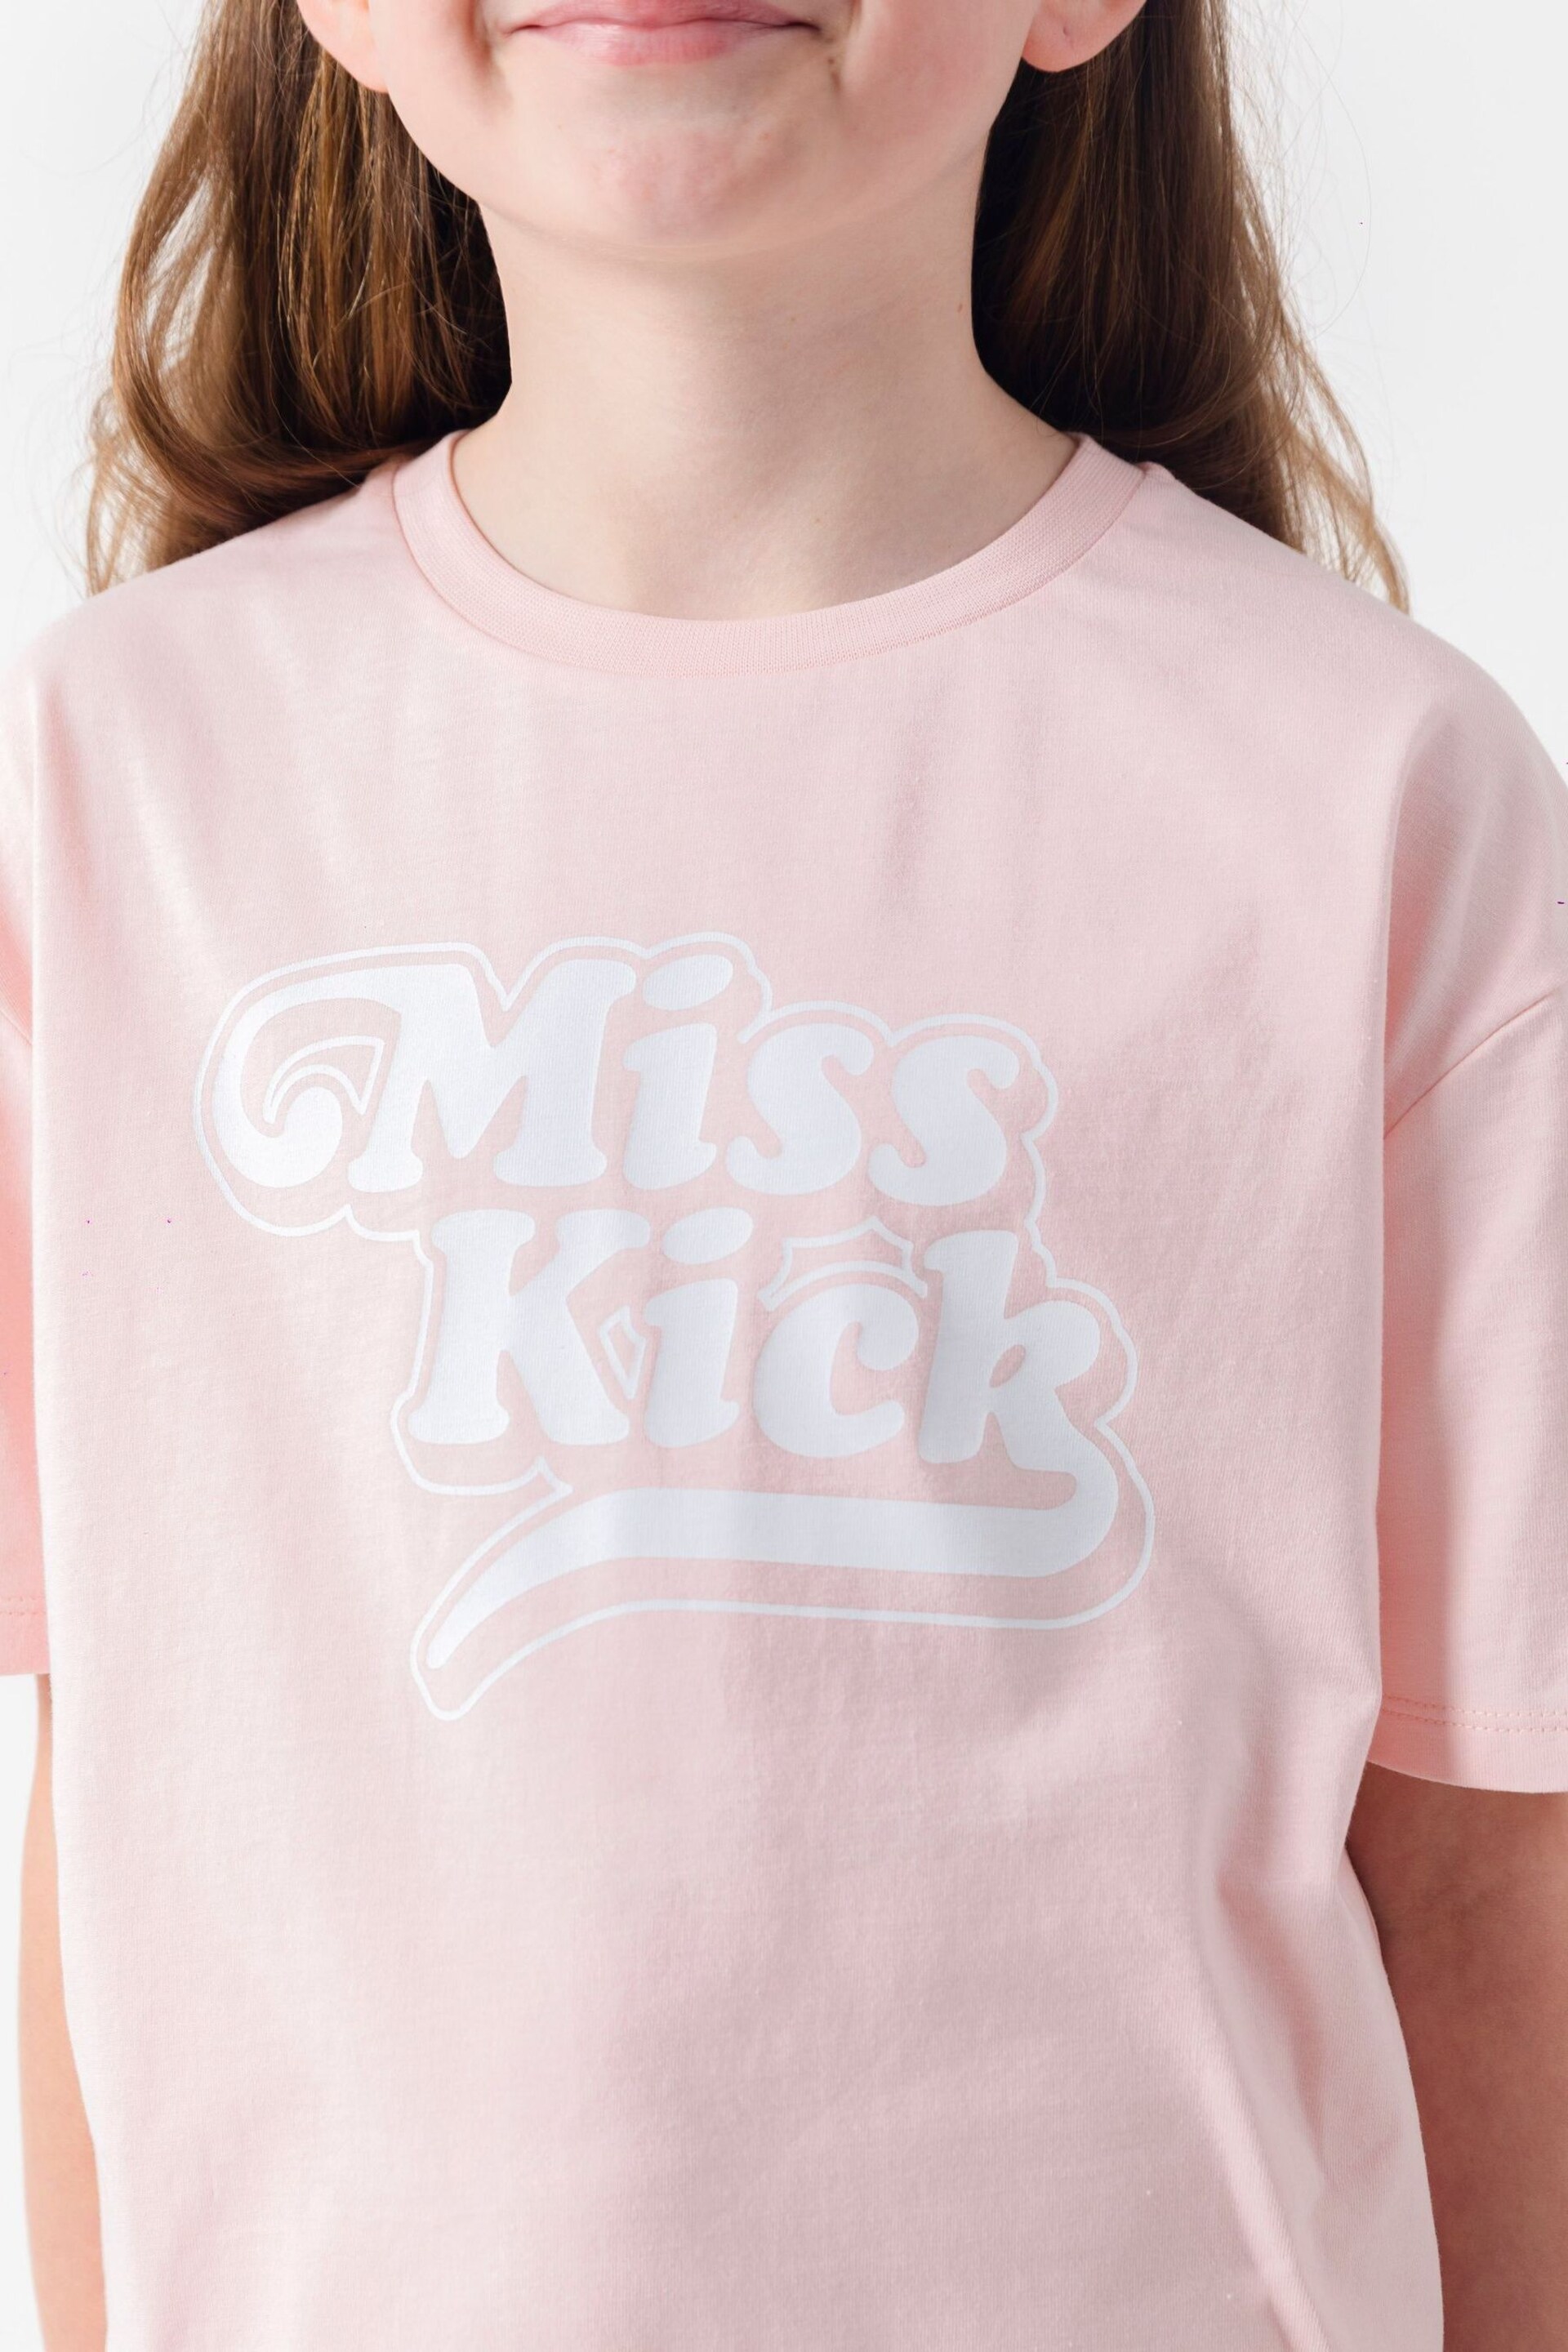 Miss Kick Girls Rachel White T-Shirt - Image 3 of 4